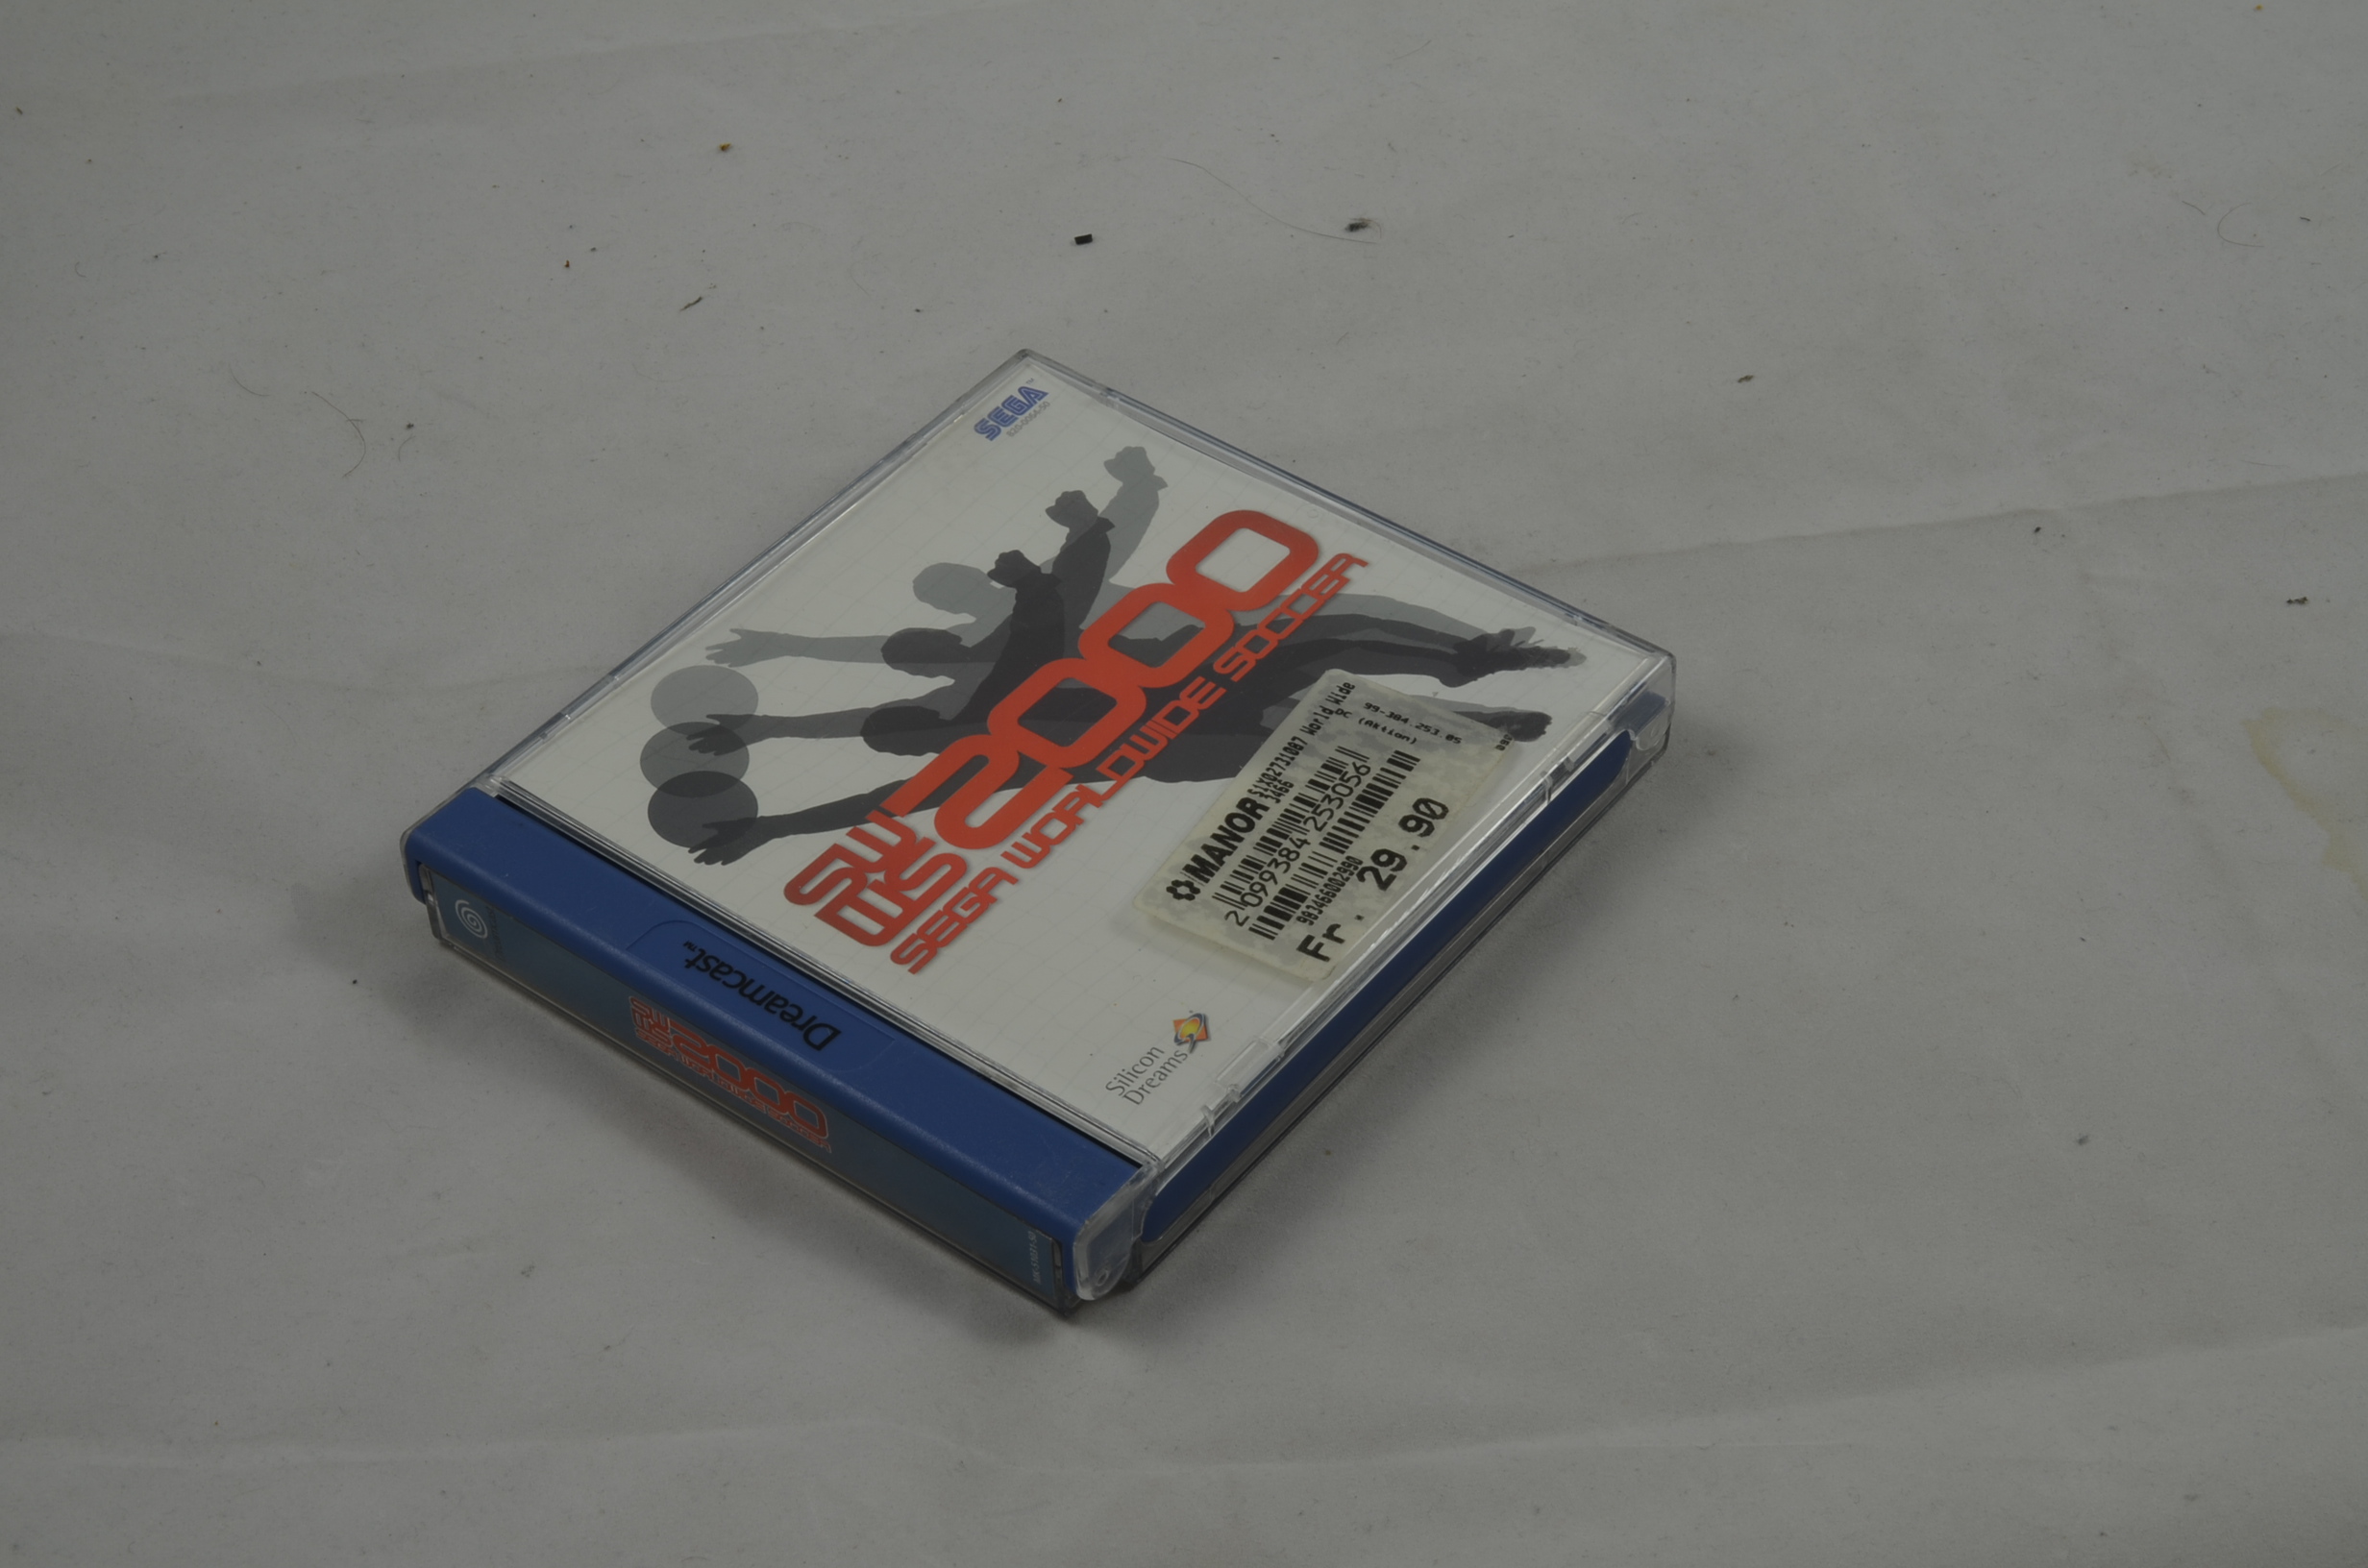 Produktbild von Sega WorldWide Soccer 2000 Dreamcast Spiel CIB (sehr gut)